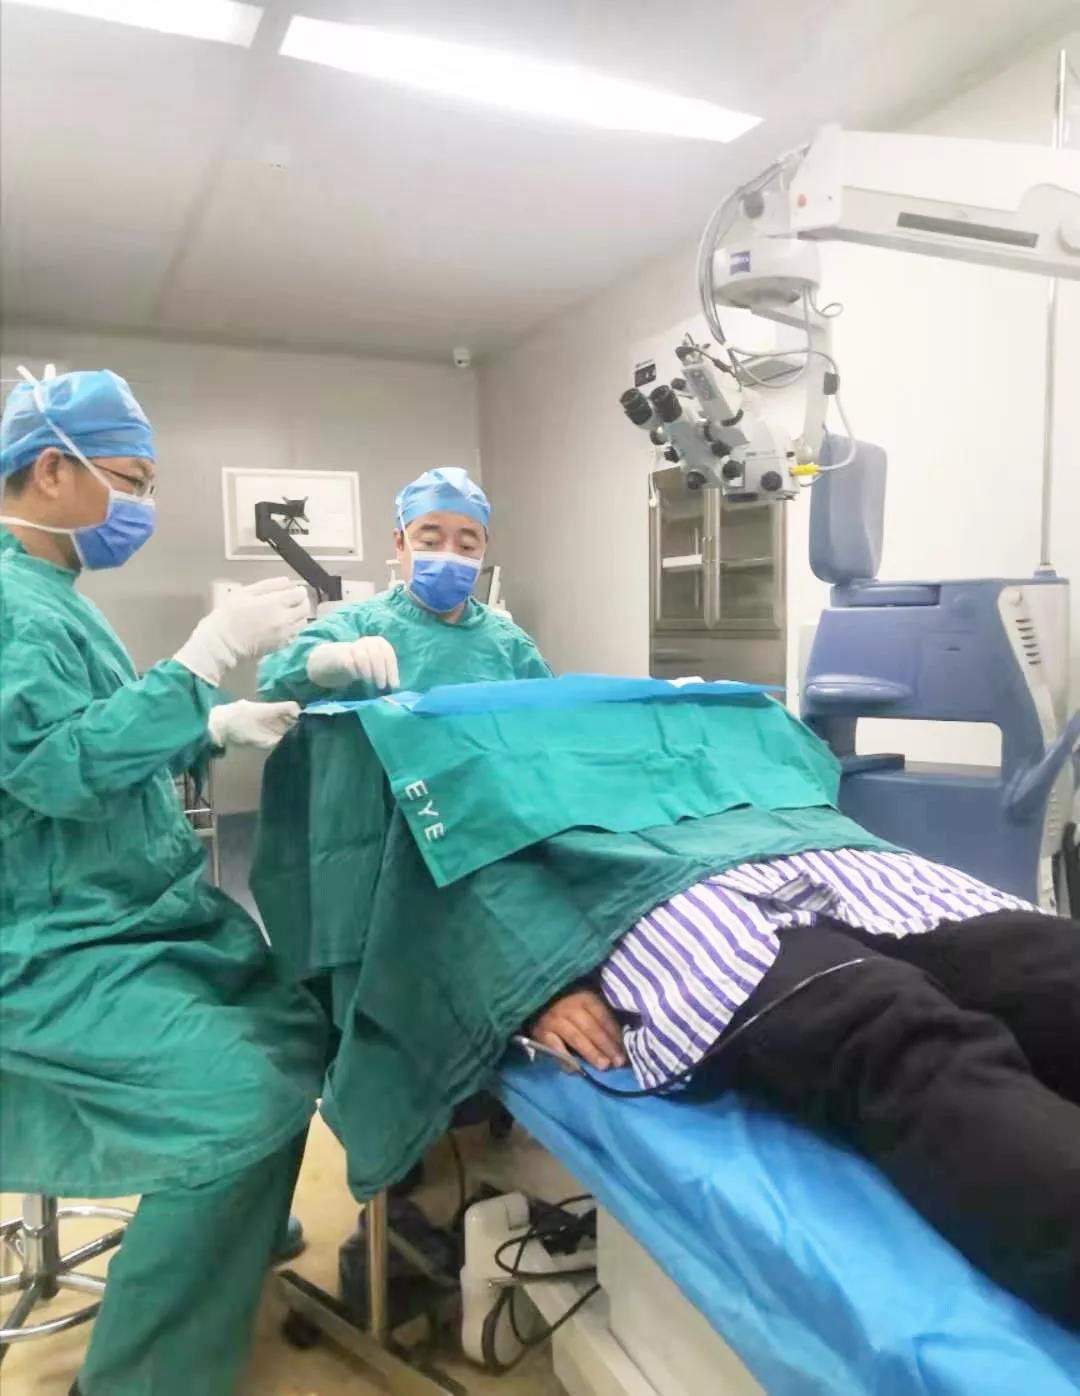 近视困扰10+年，荆门爱尔眼科医院ICL晶体植入手术助力视力重回1.0！